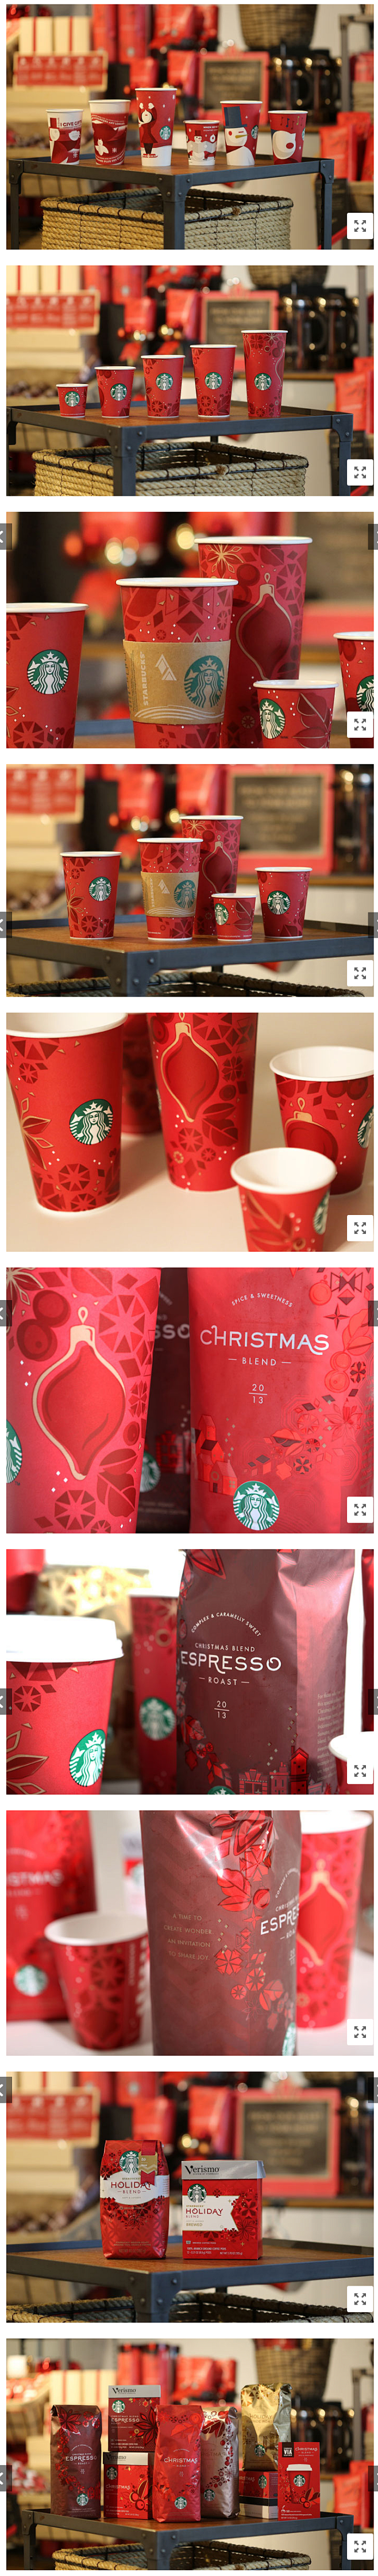 2013年圣诞节Starbucks推出的...